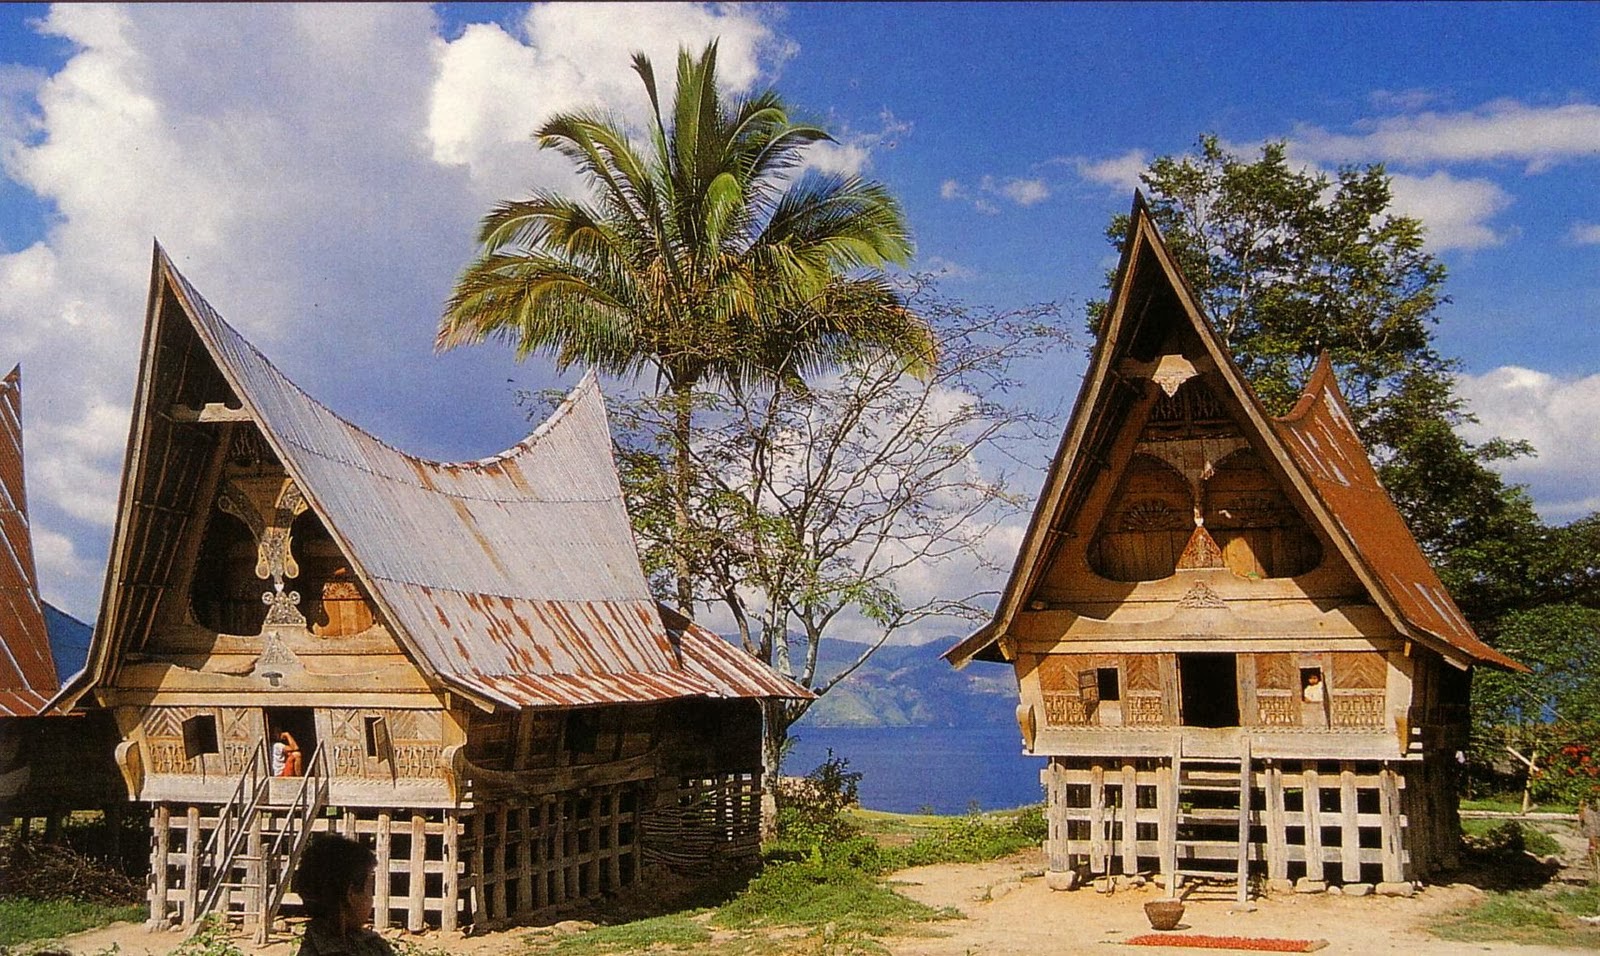 Rumah Adat Bolon Sumatera Utara